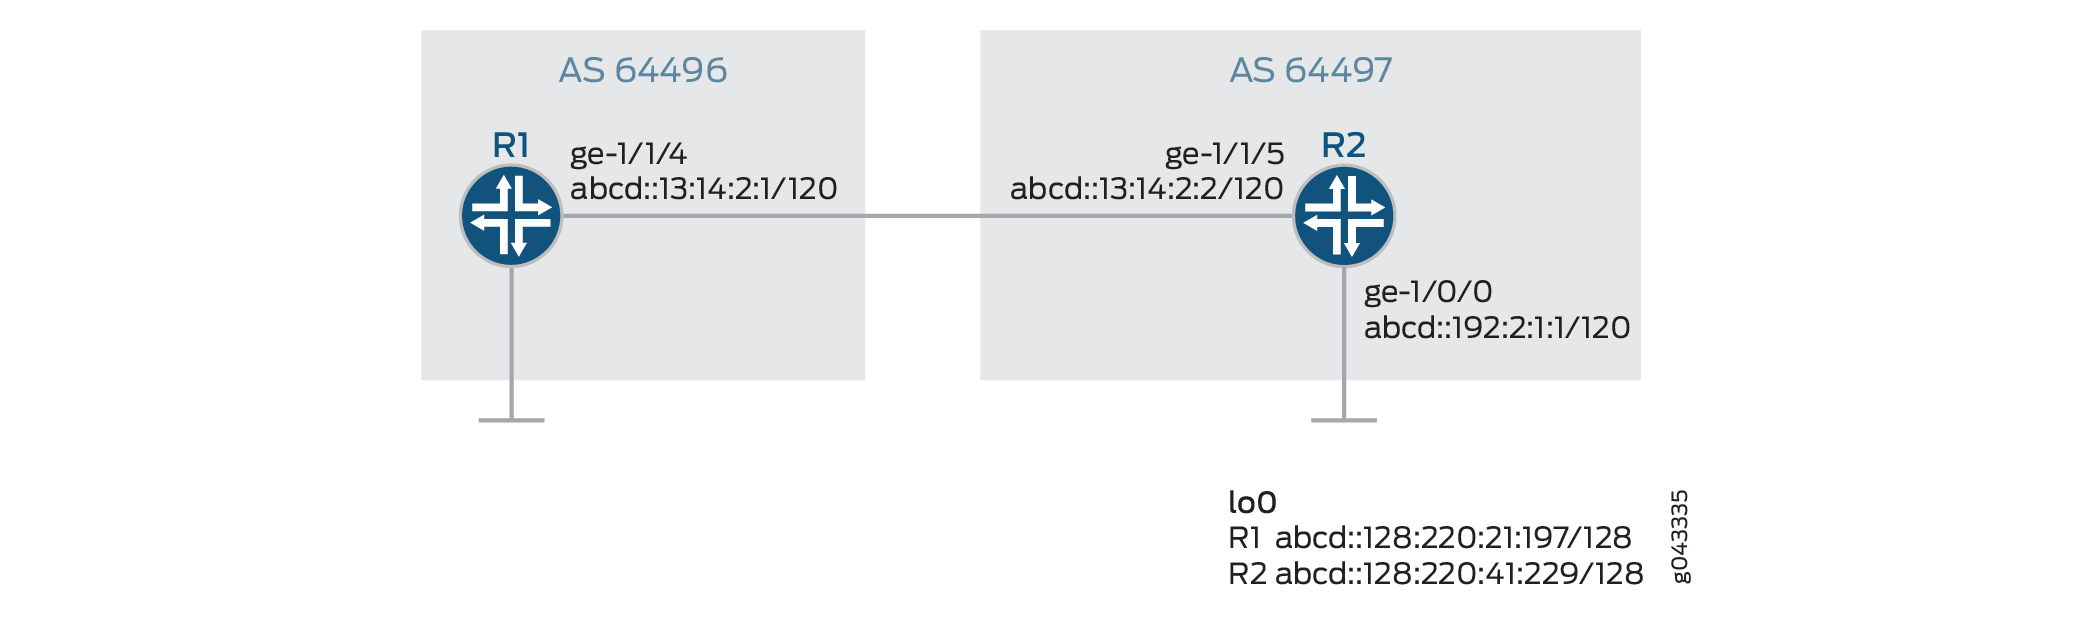 Configurando BGP para transportar rotas de fluxo IPv6